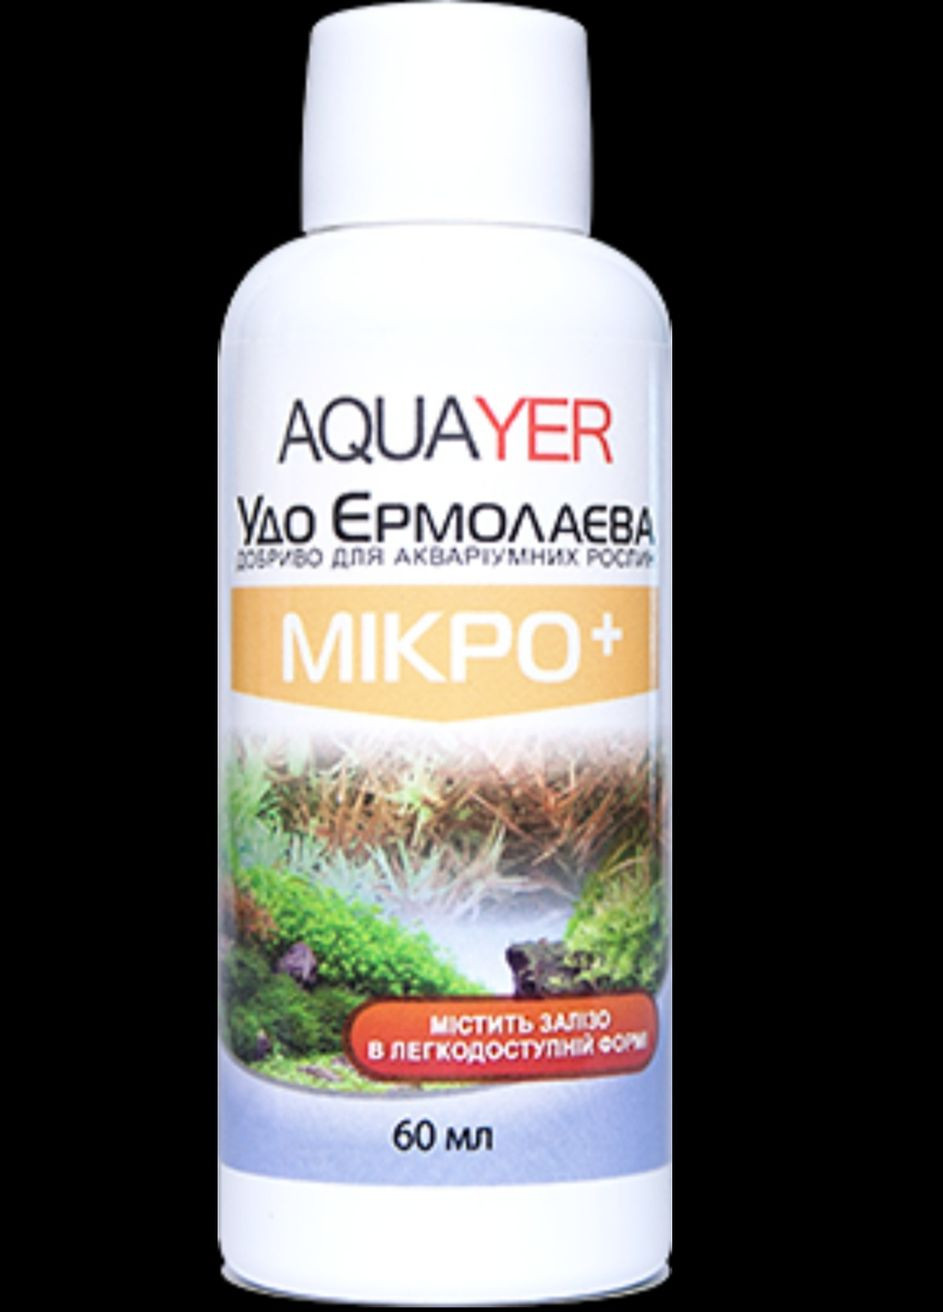 Удобрения для растений МИКРО+ 60мл, Удо Ермолаева в аквариум Aquayer (272821703)